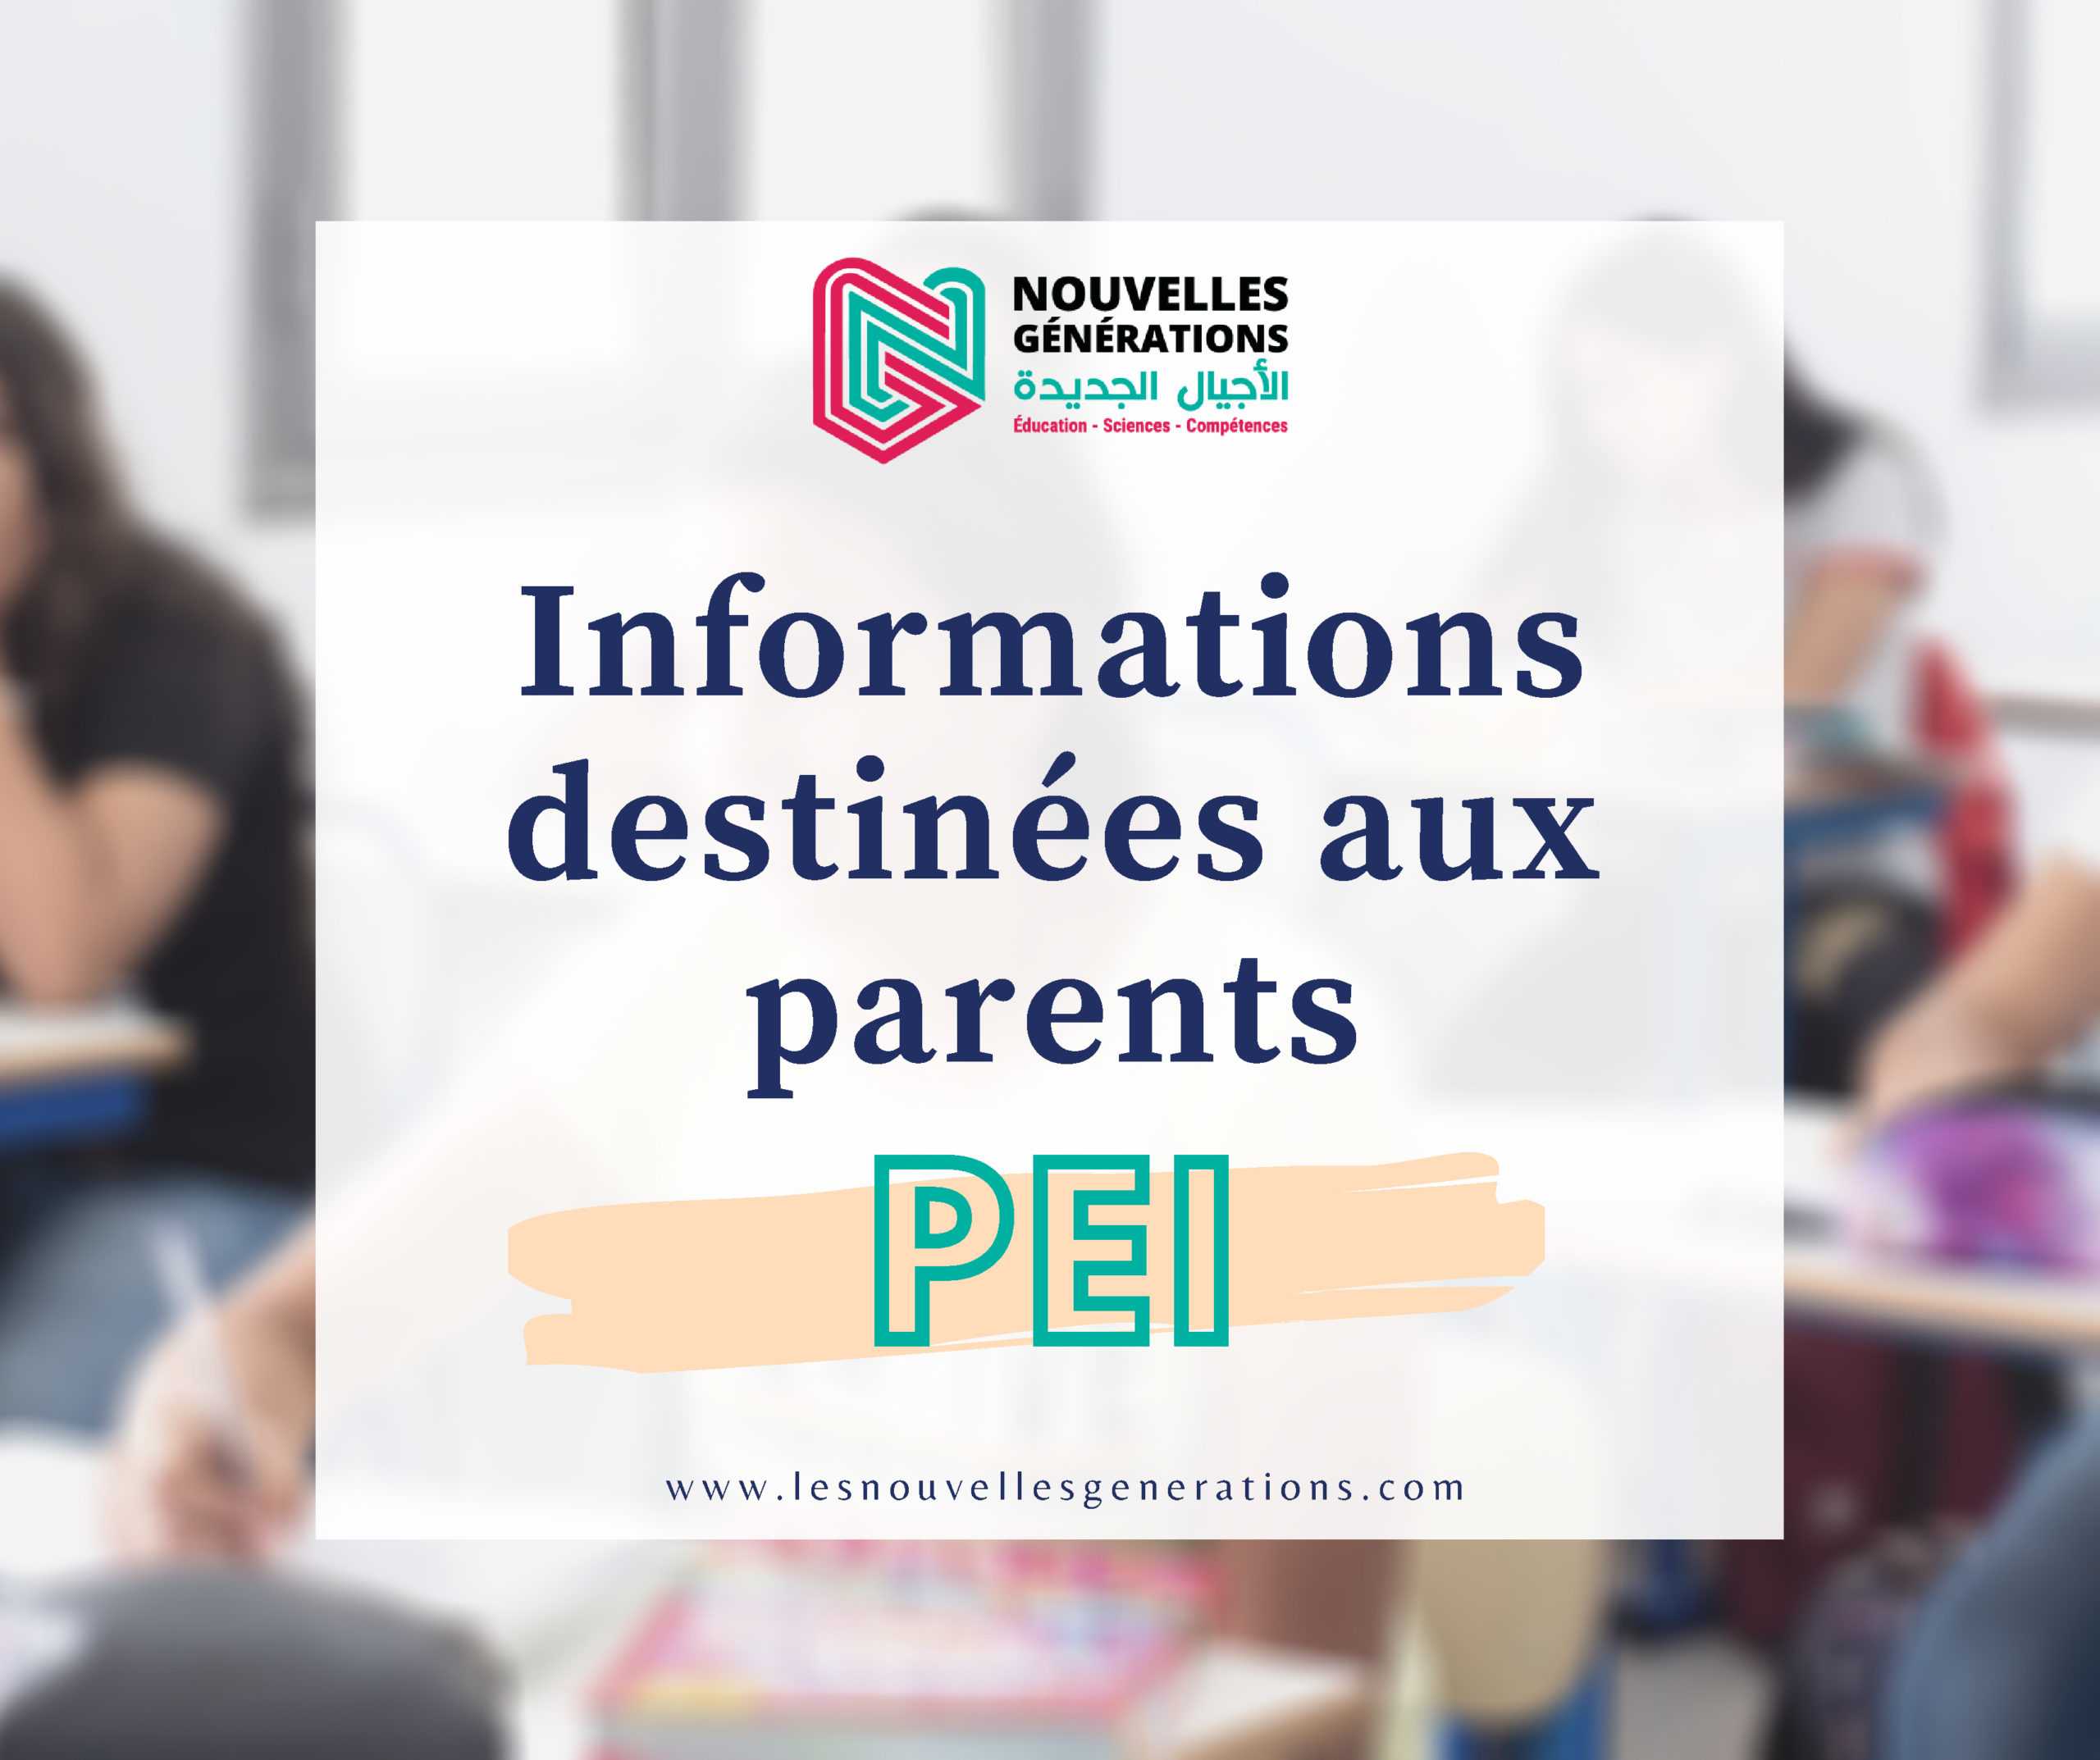 Programme d’éducation intermédiaire (PEI) : informations destinées aux parents